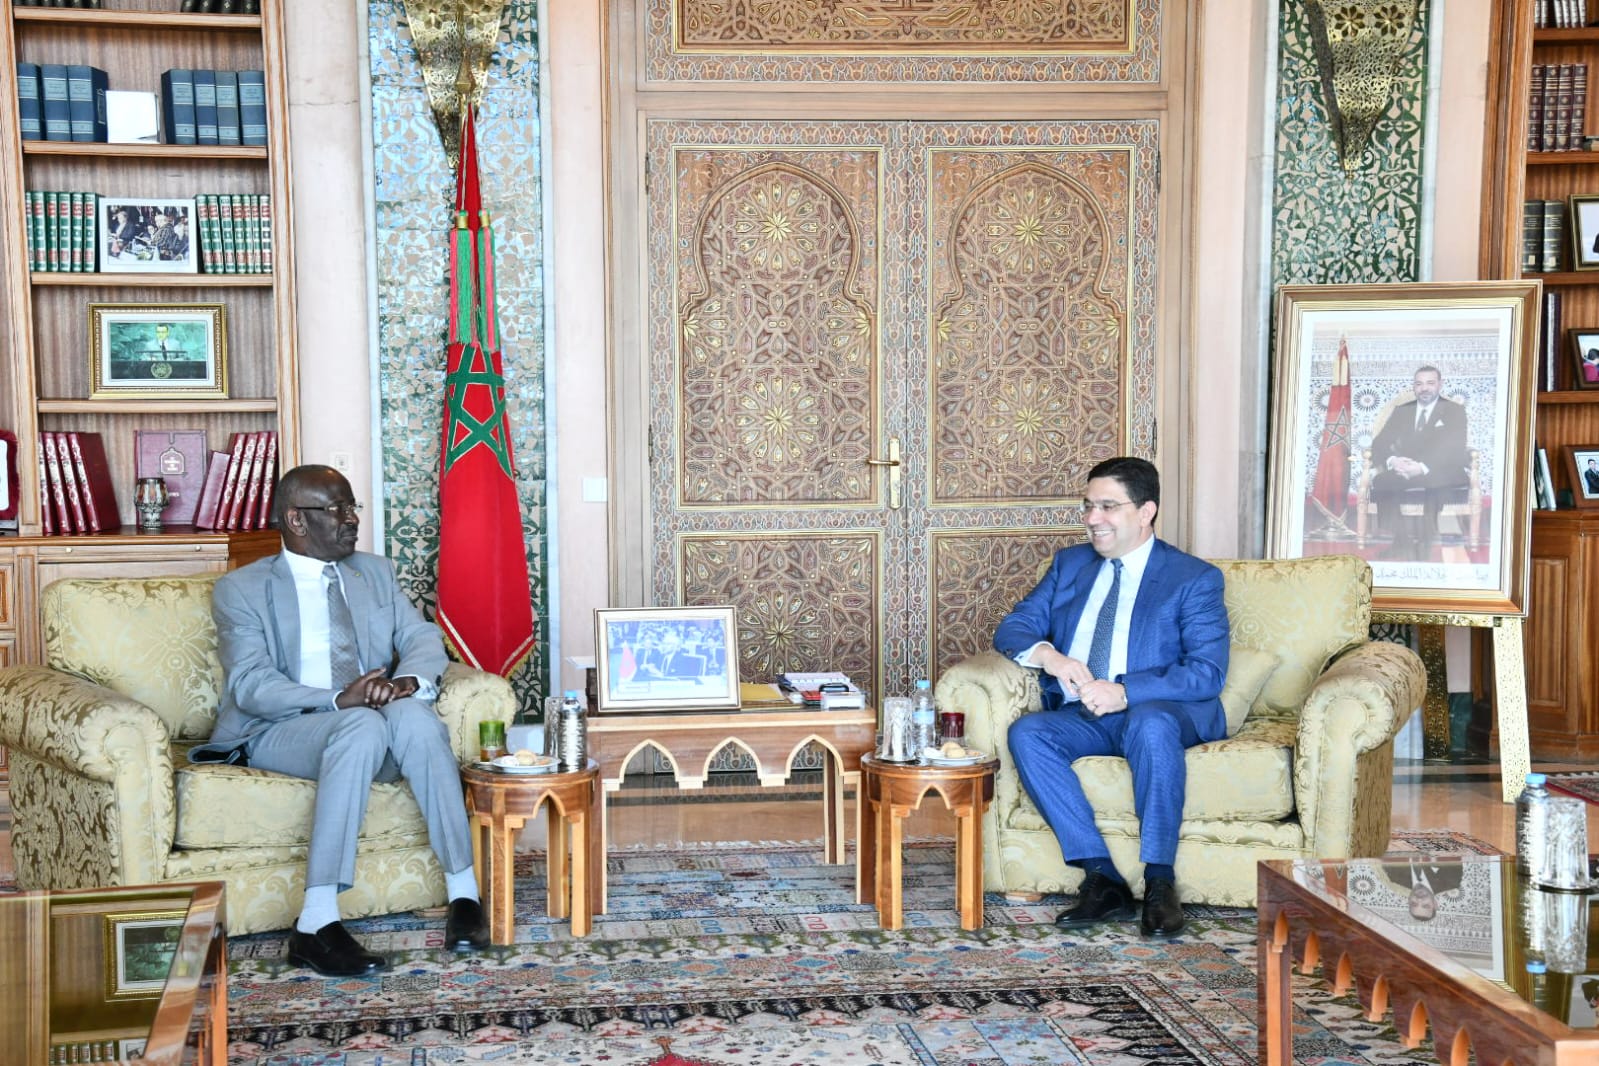 Taxation des camions marocains : le Chef de la diplomatie mauritanienne rassure et promet une solution concertée